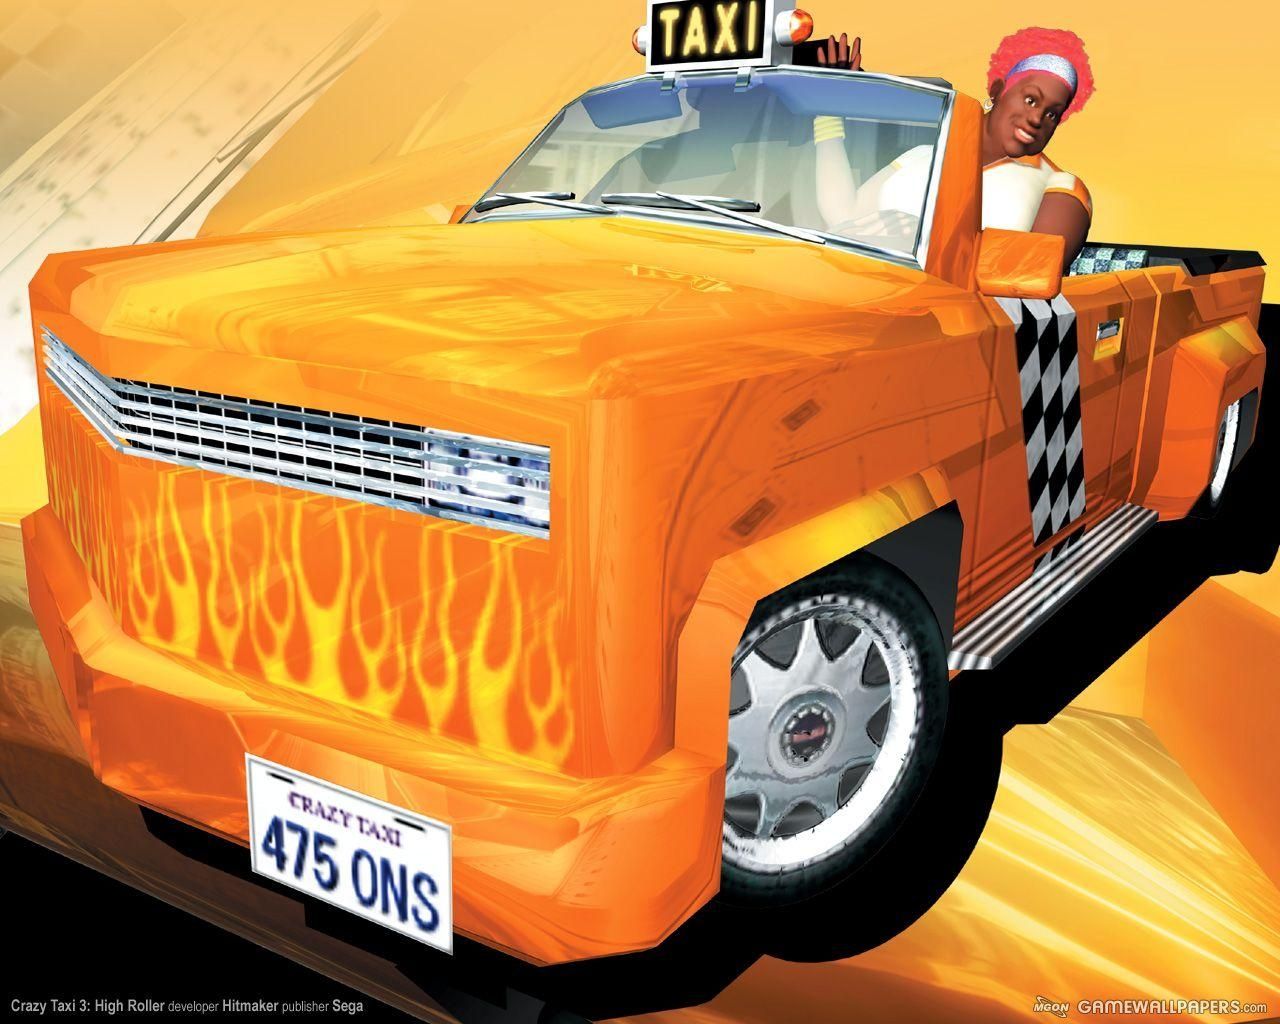 Fond d'écran gratuit de Crazy Taxi 3 numéro 38278